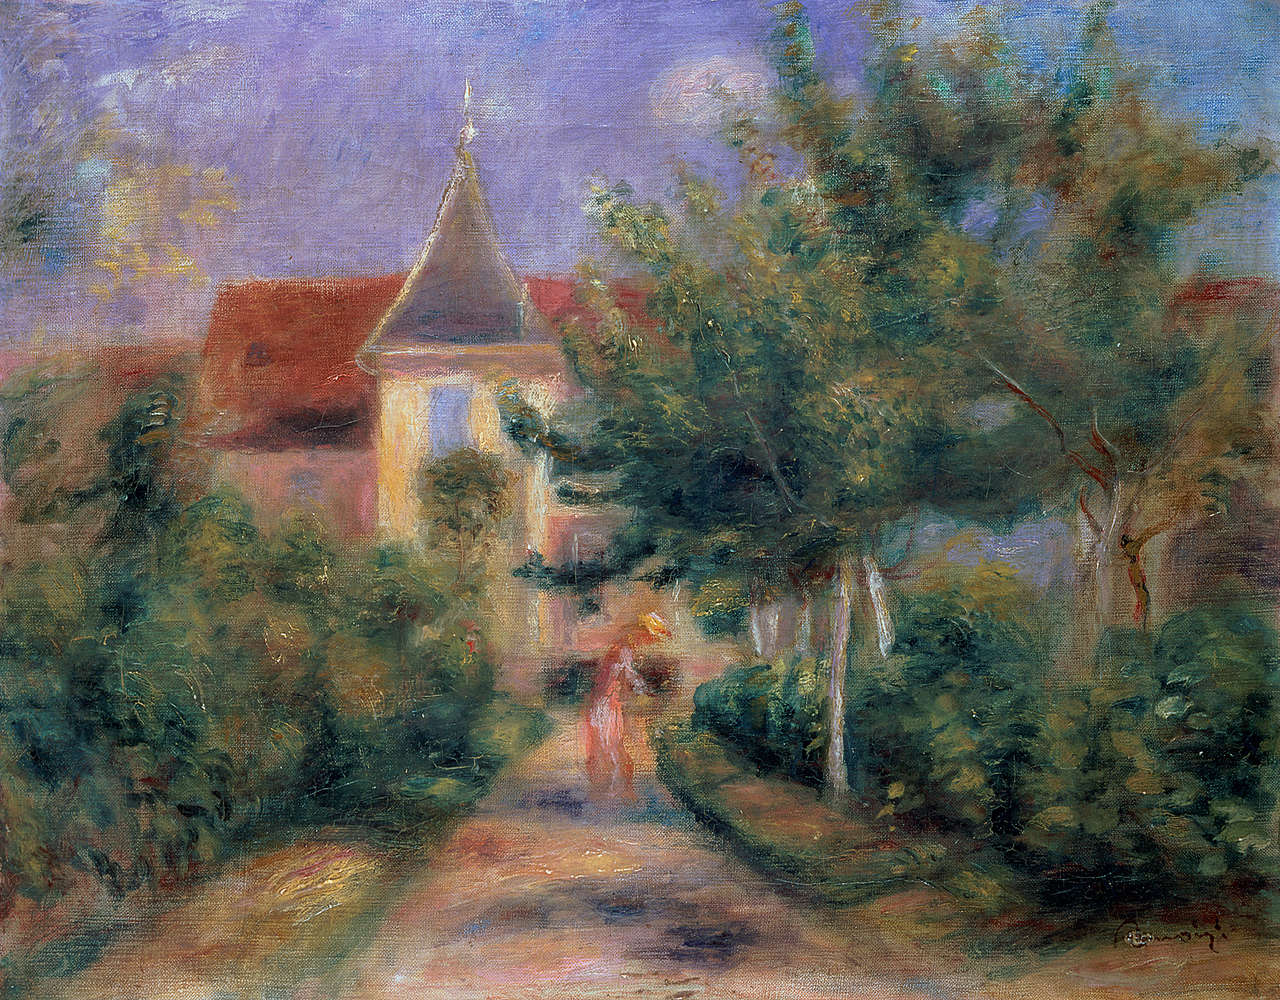             Fotomurali "Casa di Renoir a Essoyes" di Pierre Auguste Renoir
        